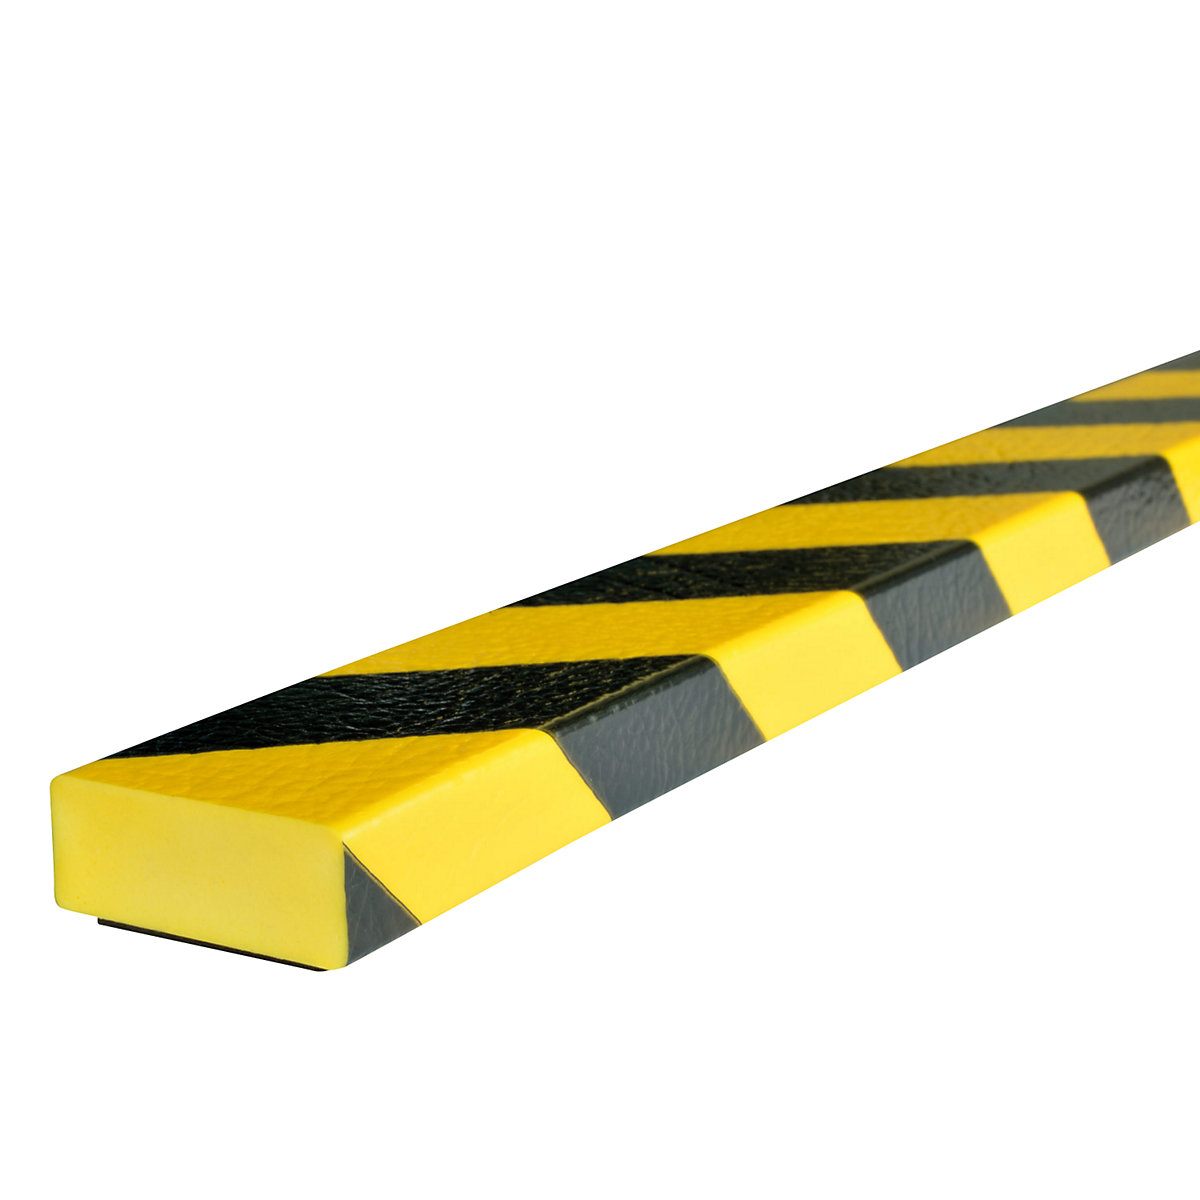 Ochrana ploch Knuffi® – SHG, typ D, kus 1 m, magnet, žlutá/černá-19